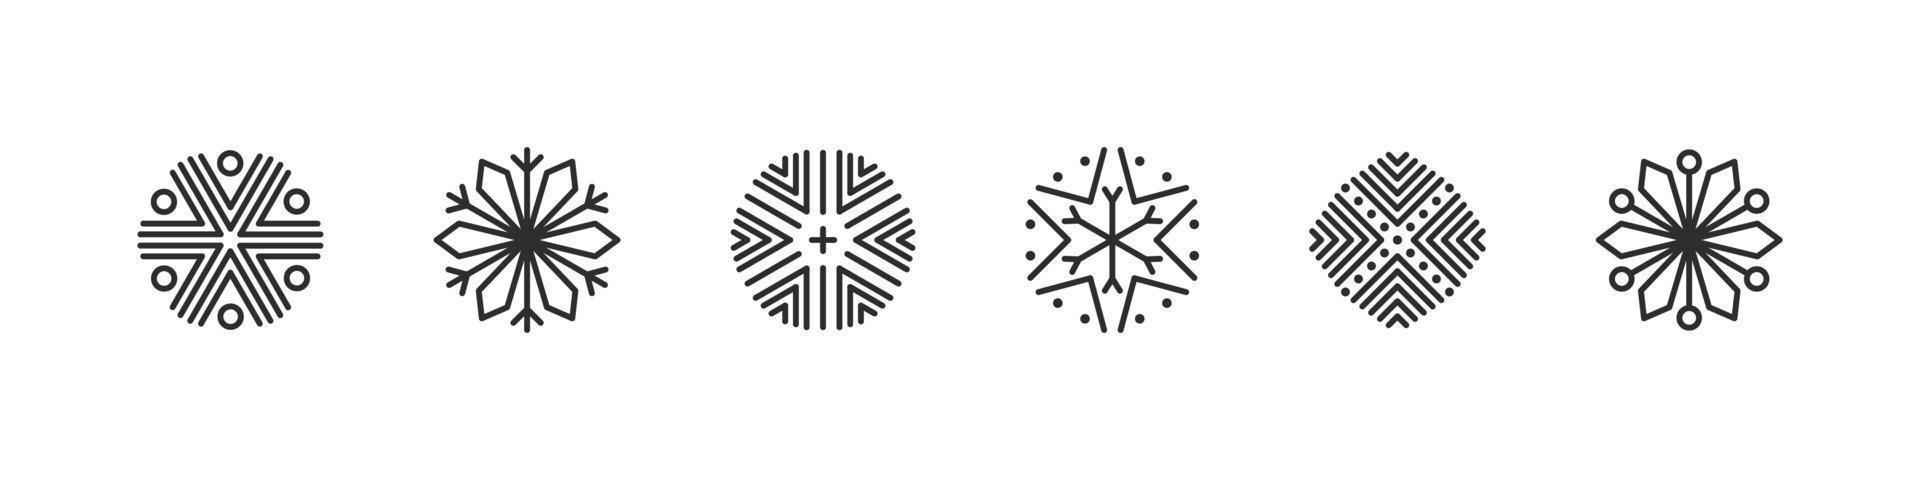 Schneeflocken. moderne weihnachtsikonen. Weihnachtszeichen. Schnee-Ornament-Symbole. Vektor-Illustration vektor